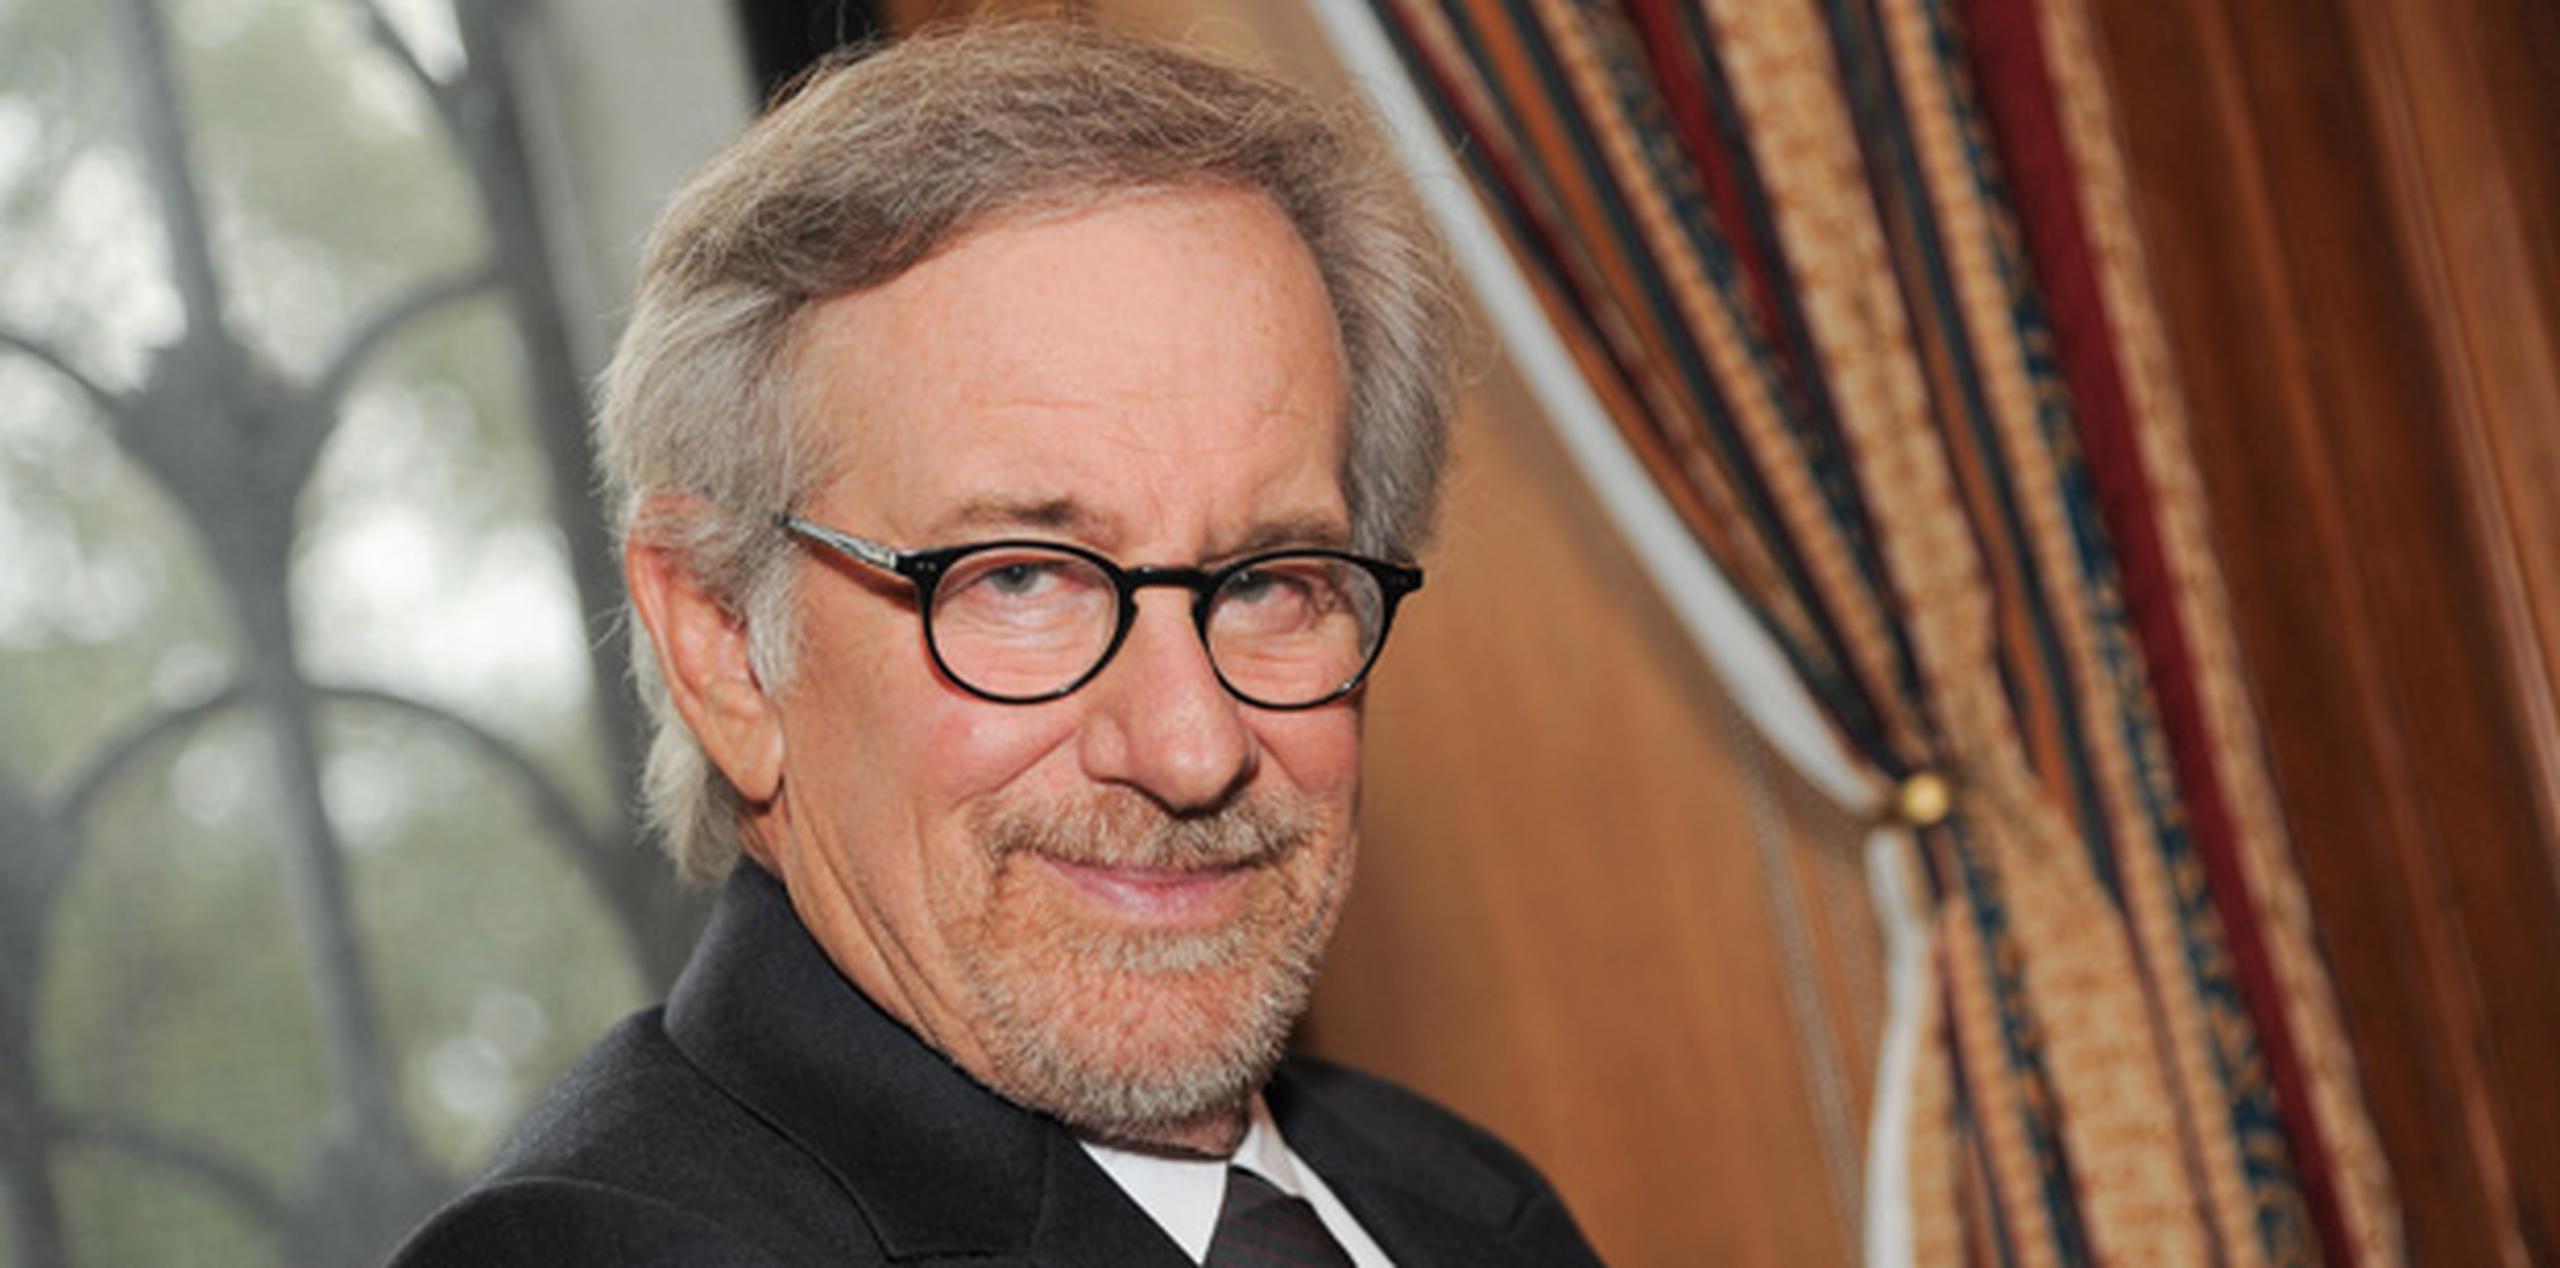 Spielberg, de 67 años, está produciendo múltiples películas y programas de televisión. (AP)